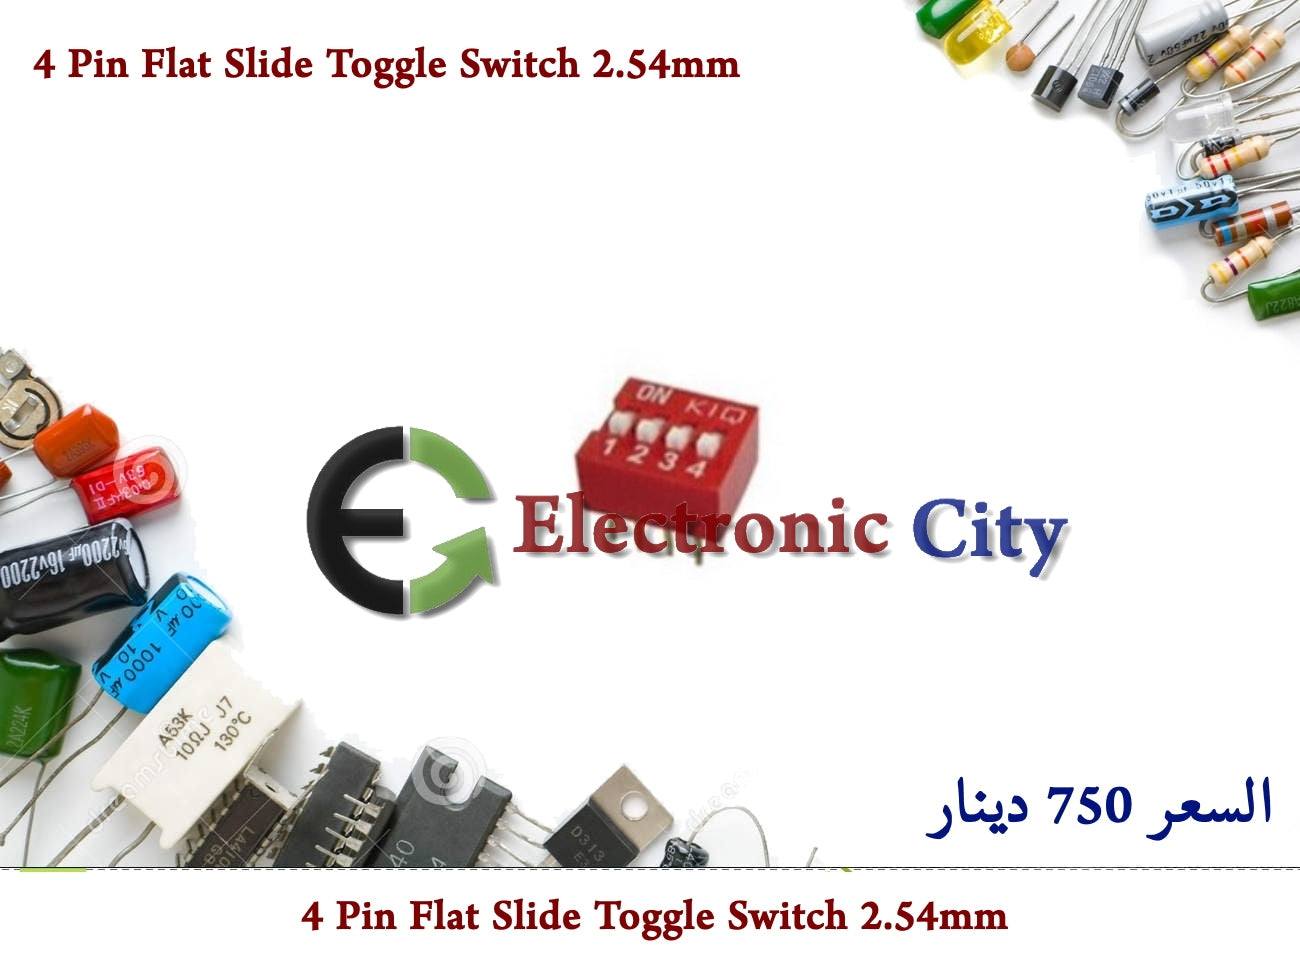 4 Pin Flat Slide Toggle Switch 2.54mm